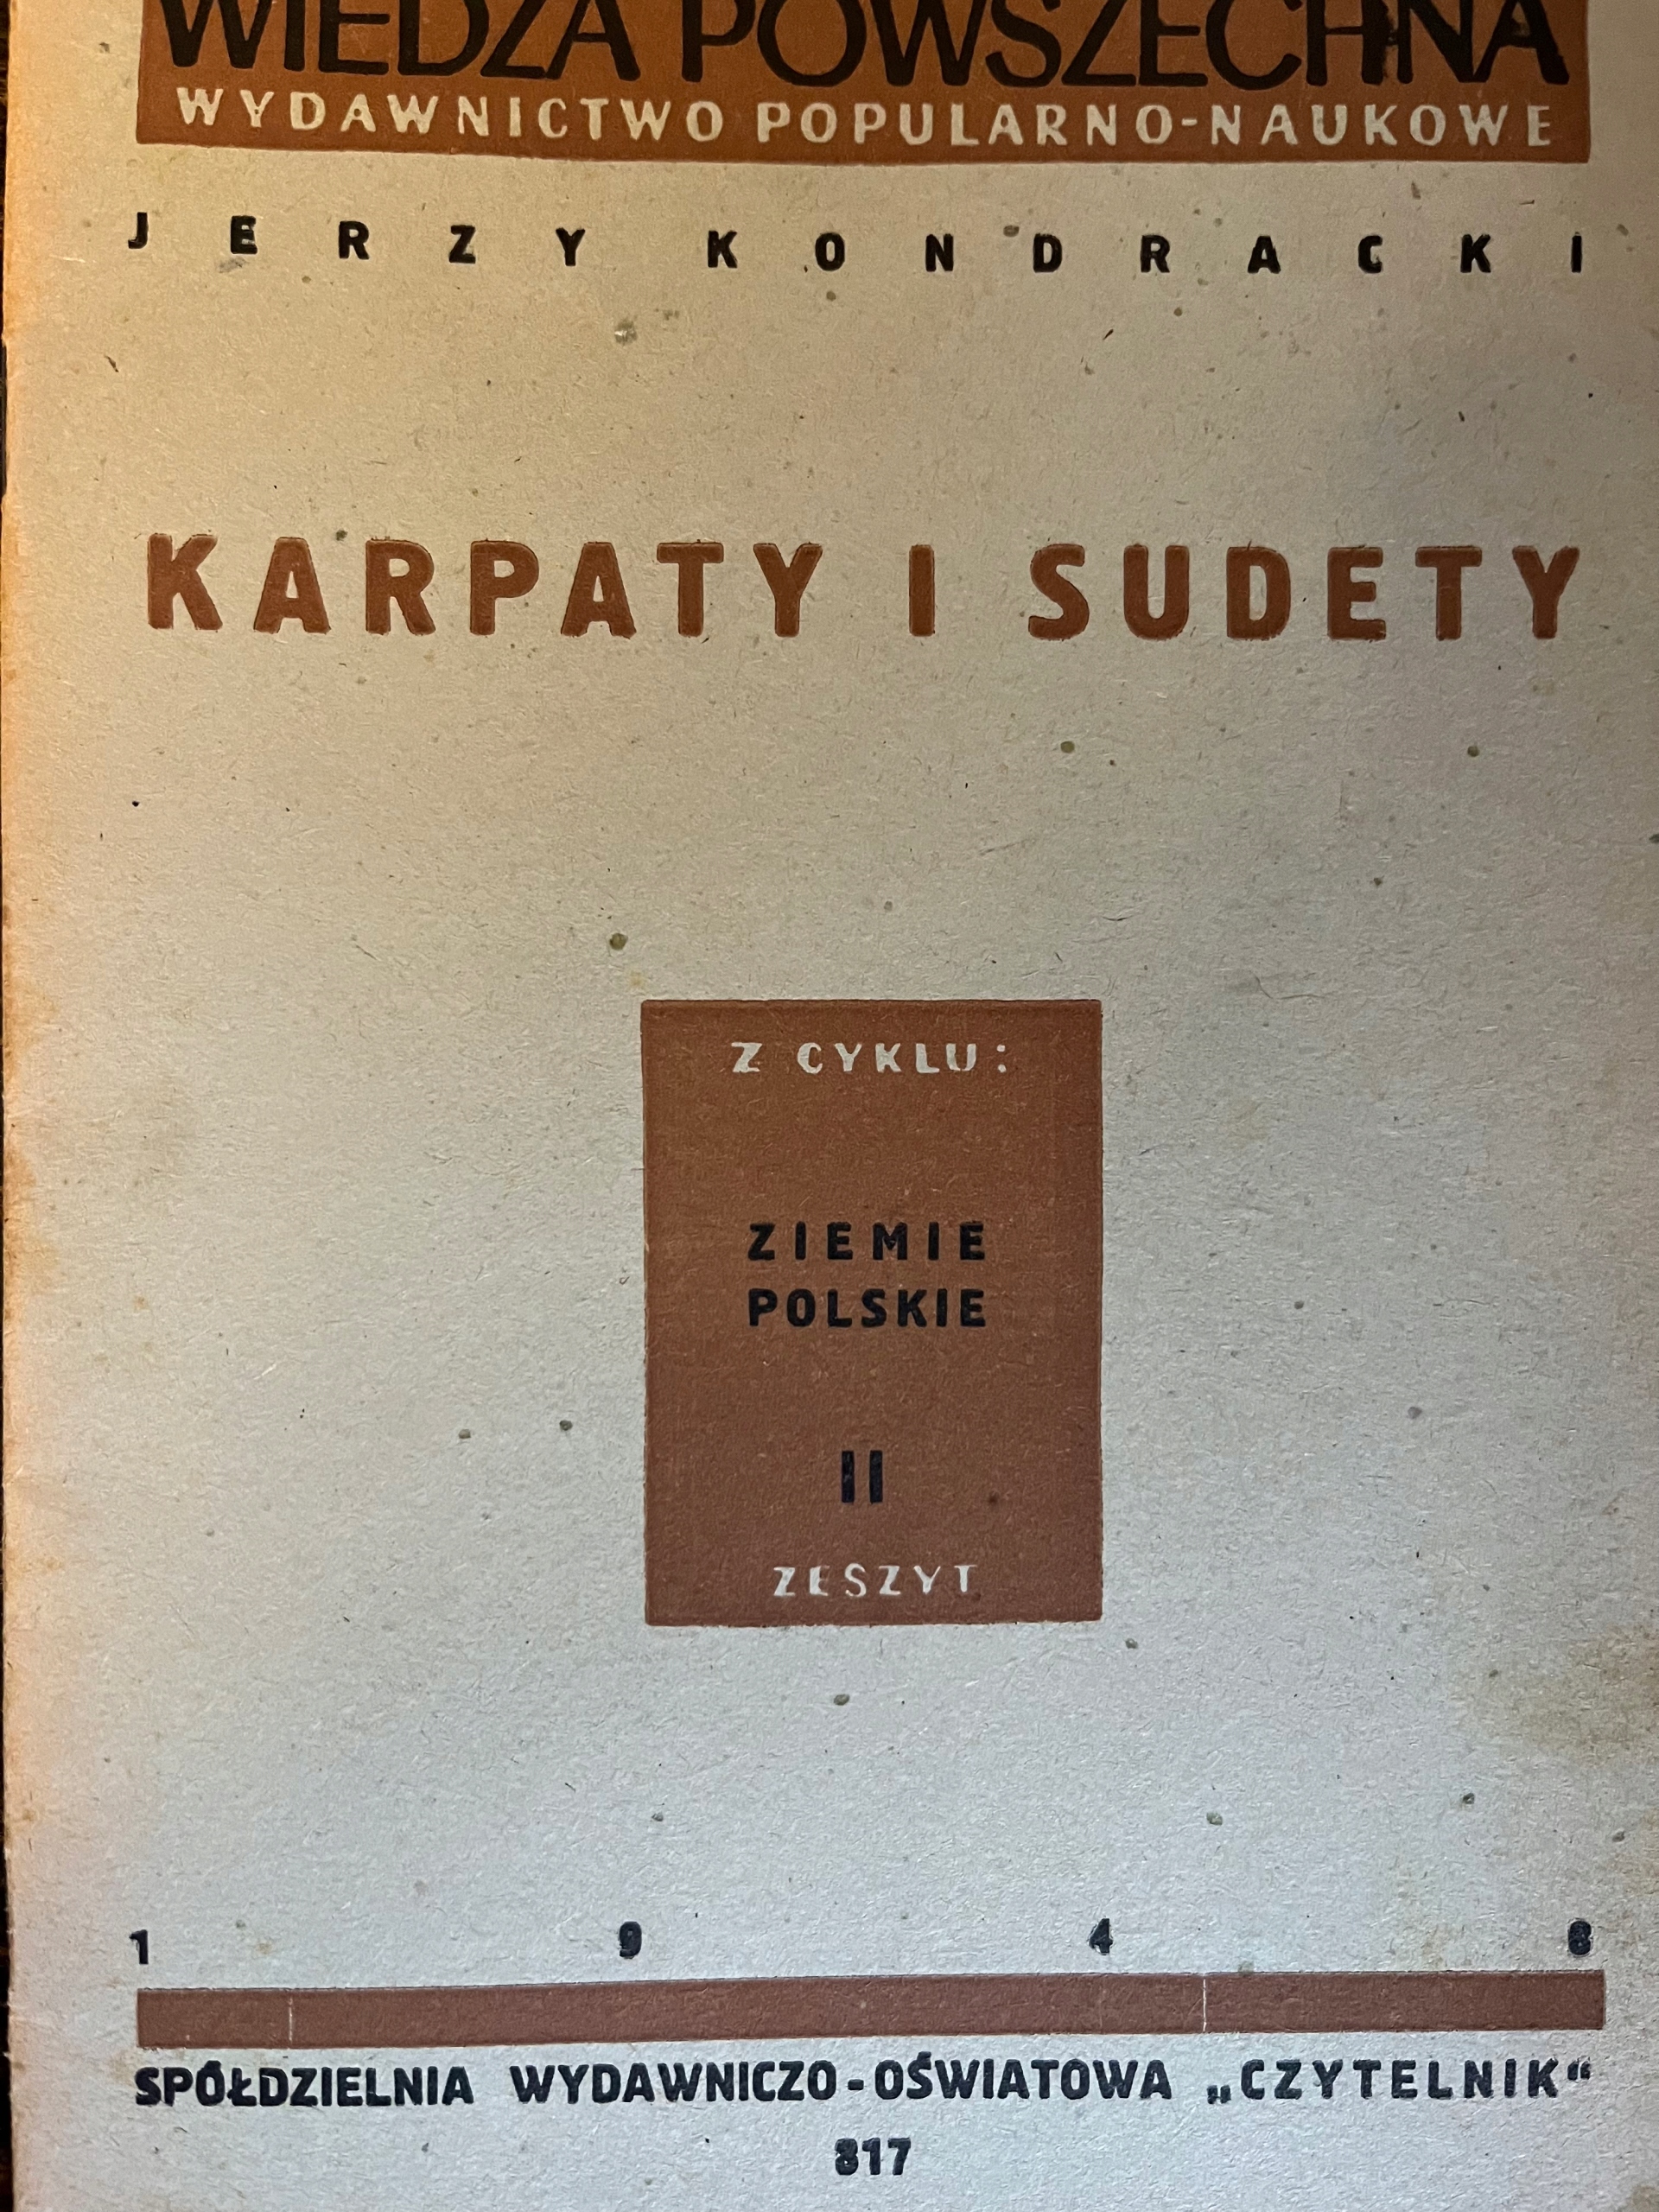 Jerzy Kondracki KARPATY A SUDETY (1948)